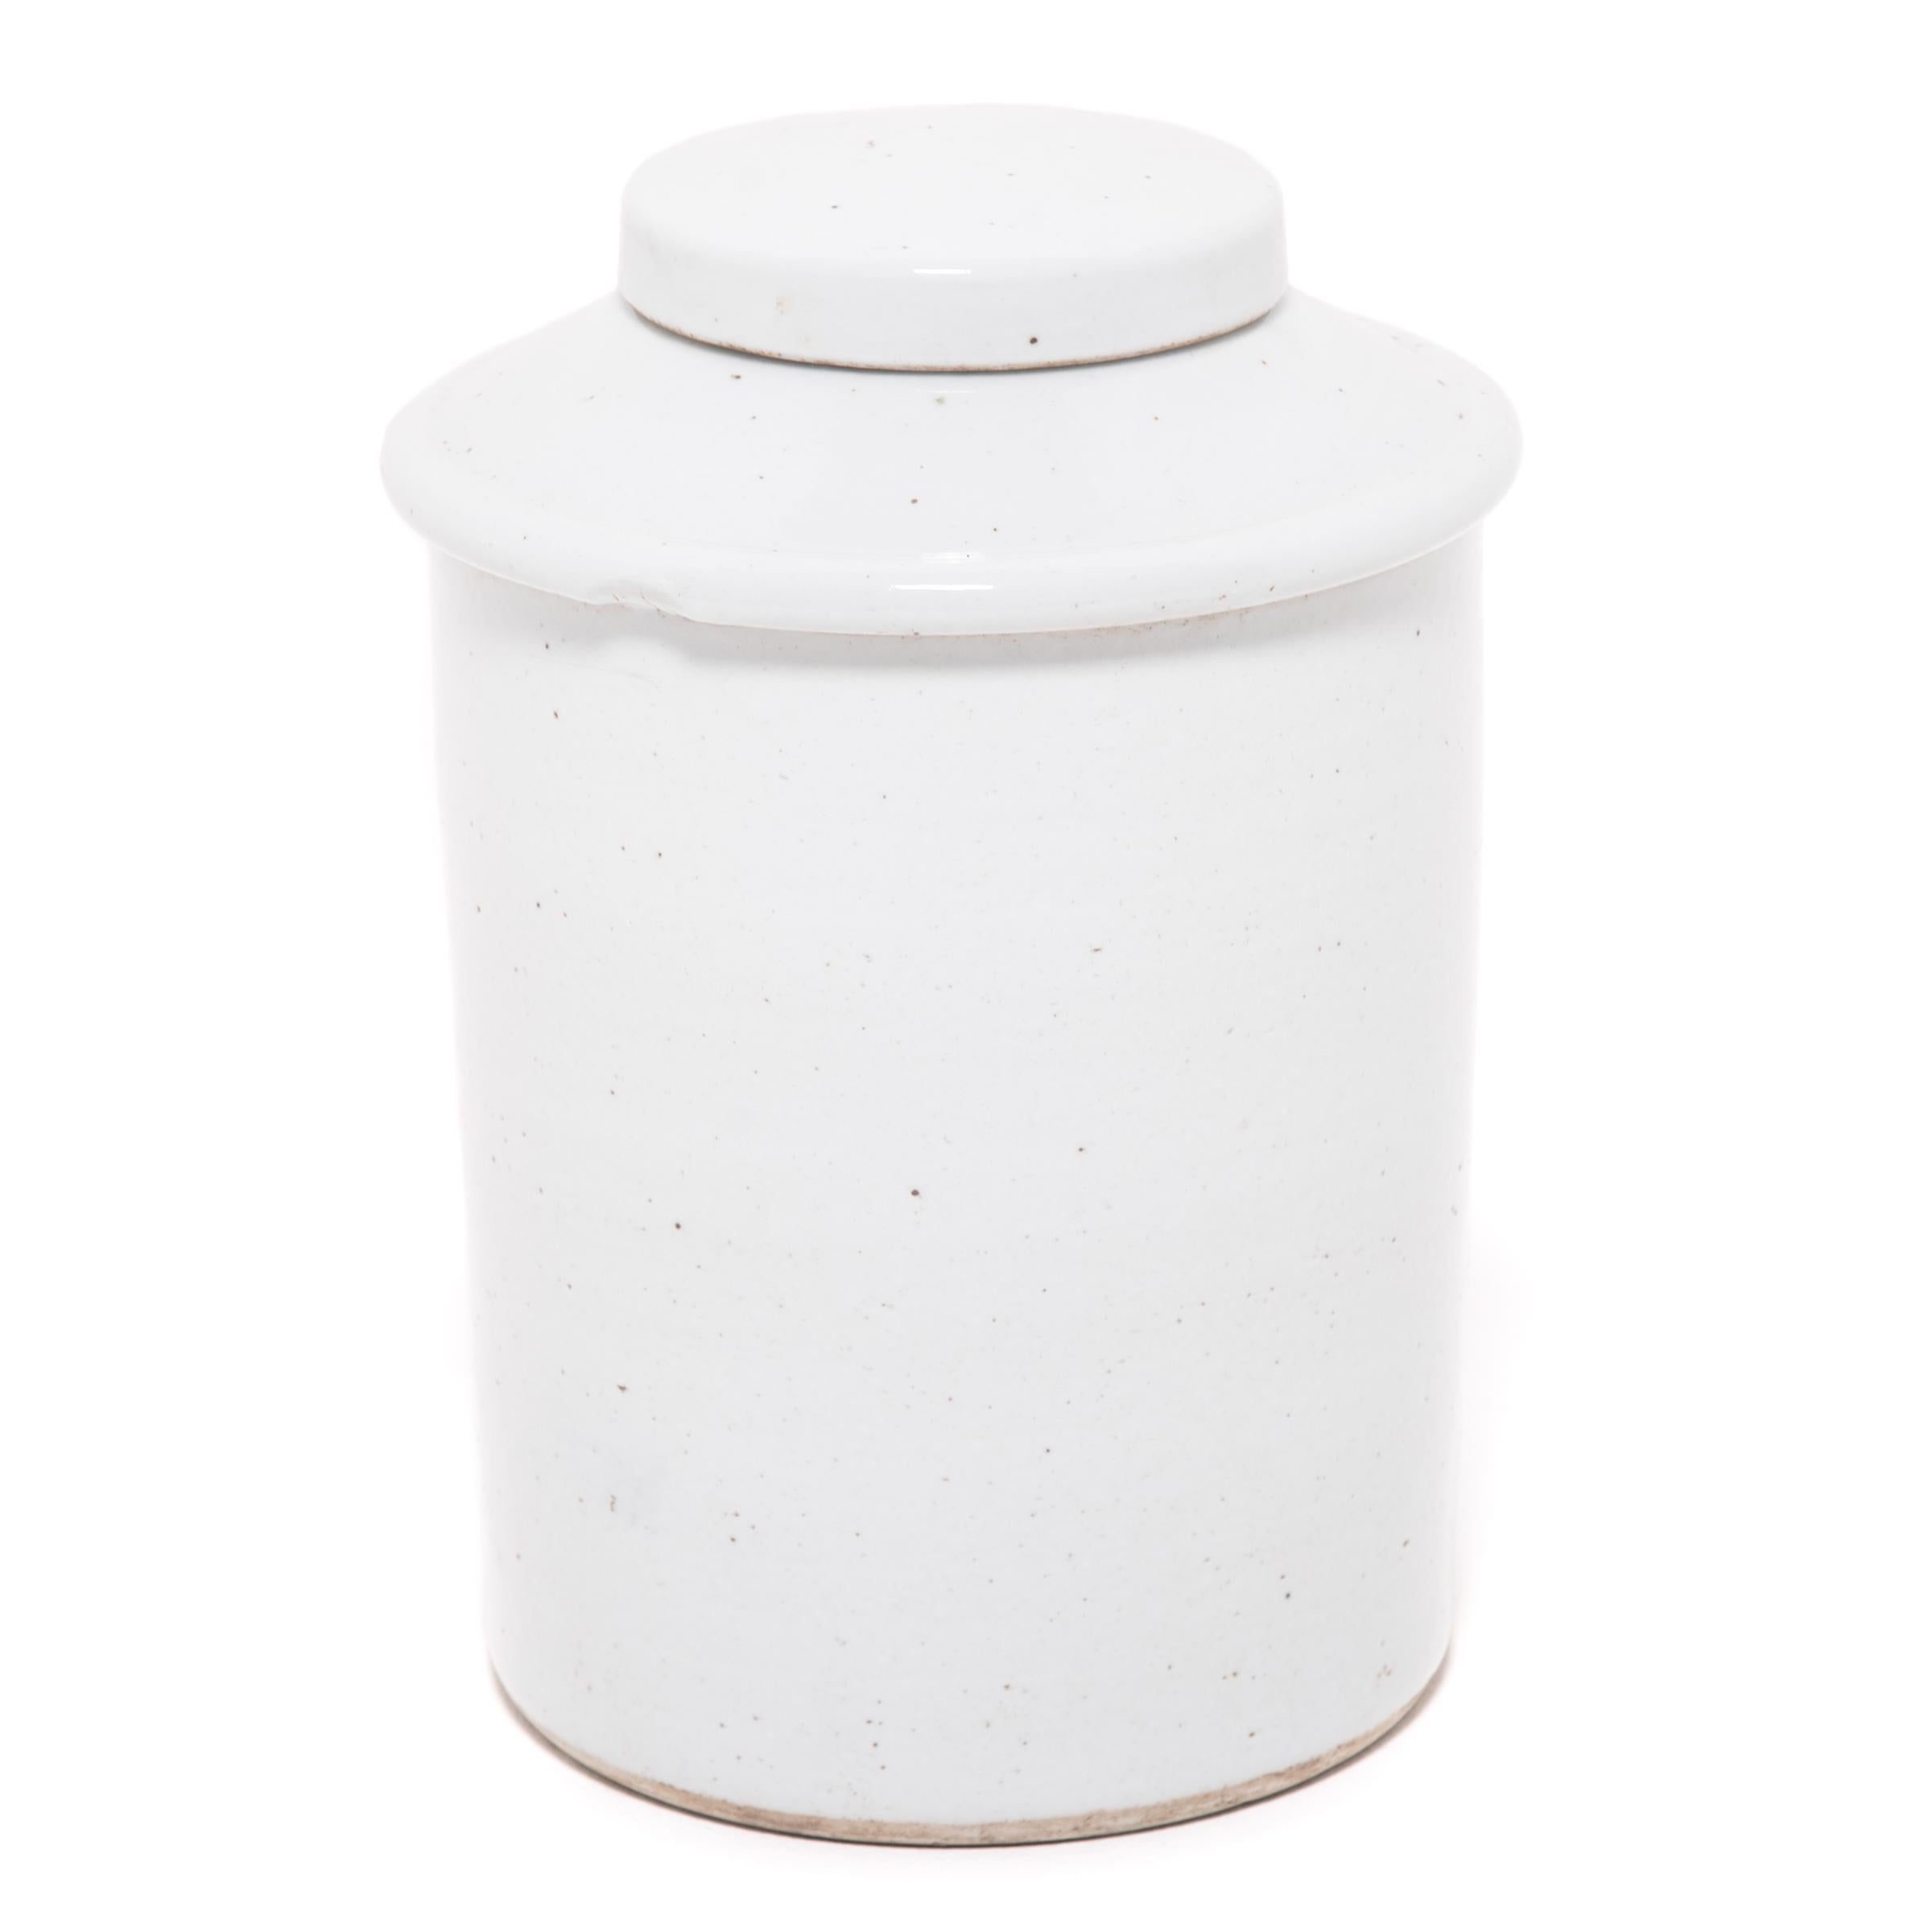 Minimalist Chinese White Glazed Tea Leaf Jar For Sale